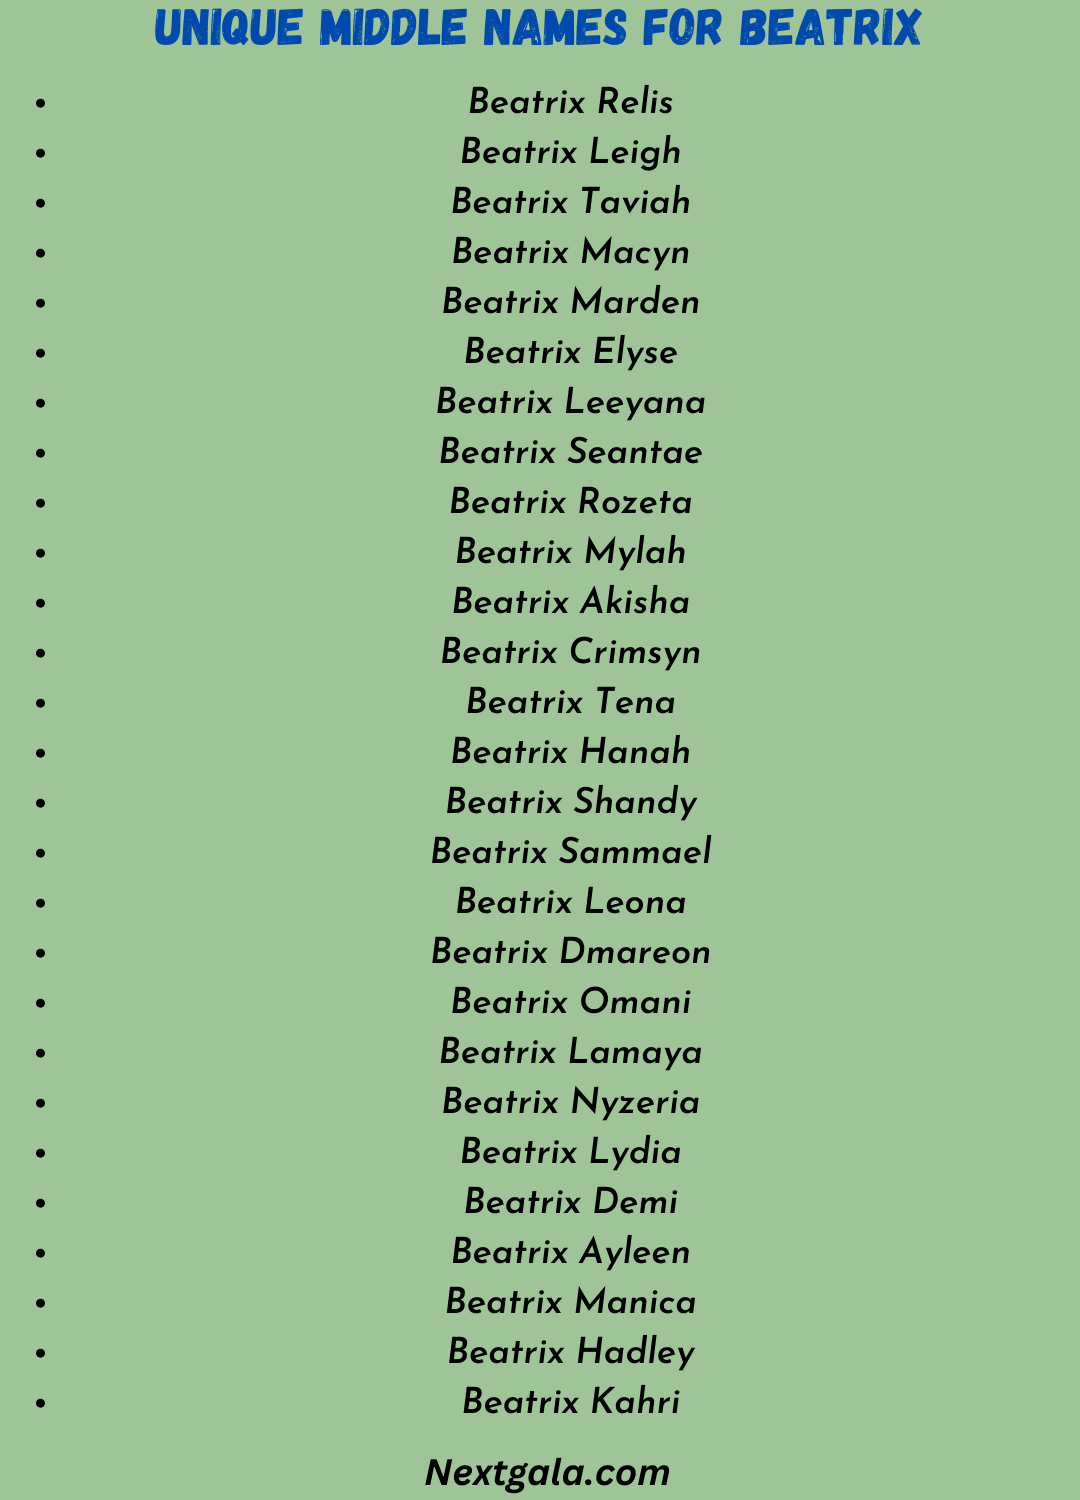 Unique Middle Names for Beatrix